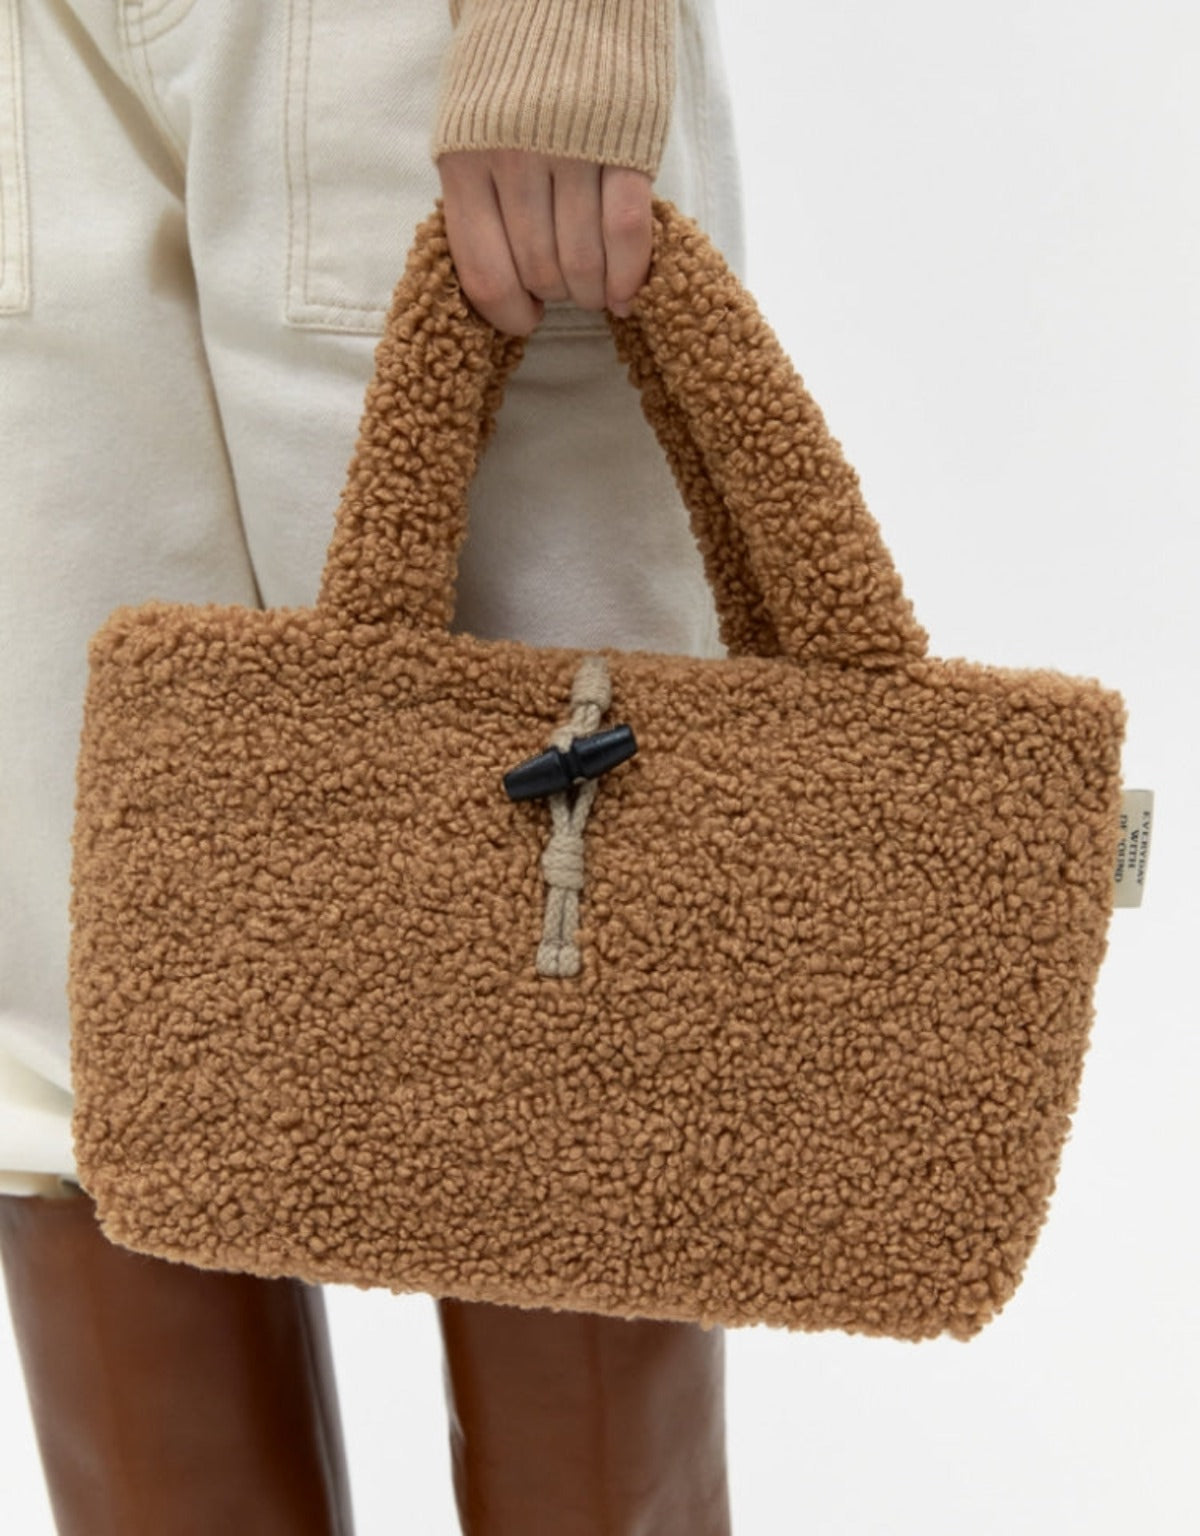 Poodle Bag In Brown